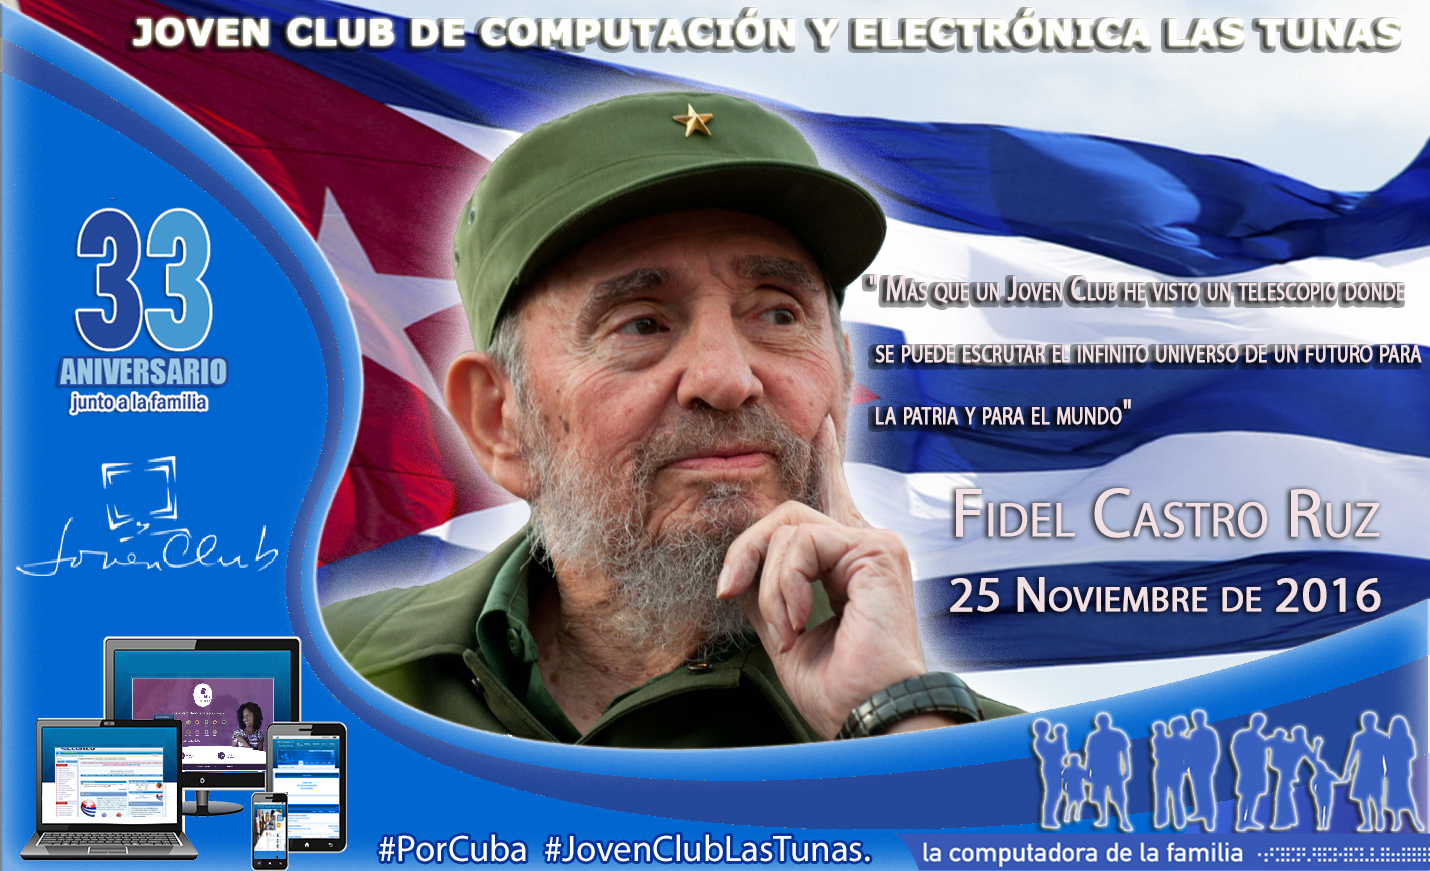 Fidel vive! Su pueblo lucha y los Joven Club, nacidos gracias a su ingenio, le recuerdan y siguen en pie como la Computadora de la Familia Cubana